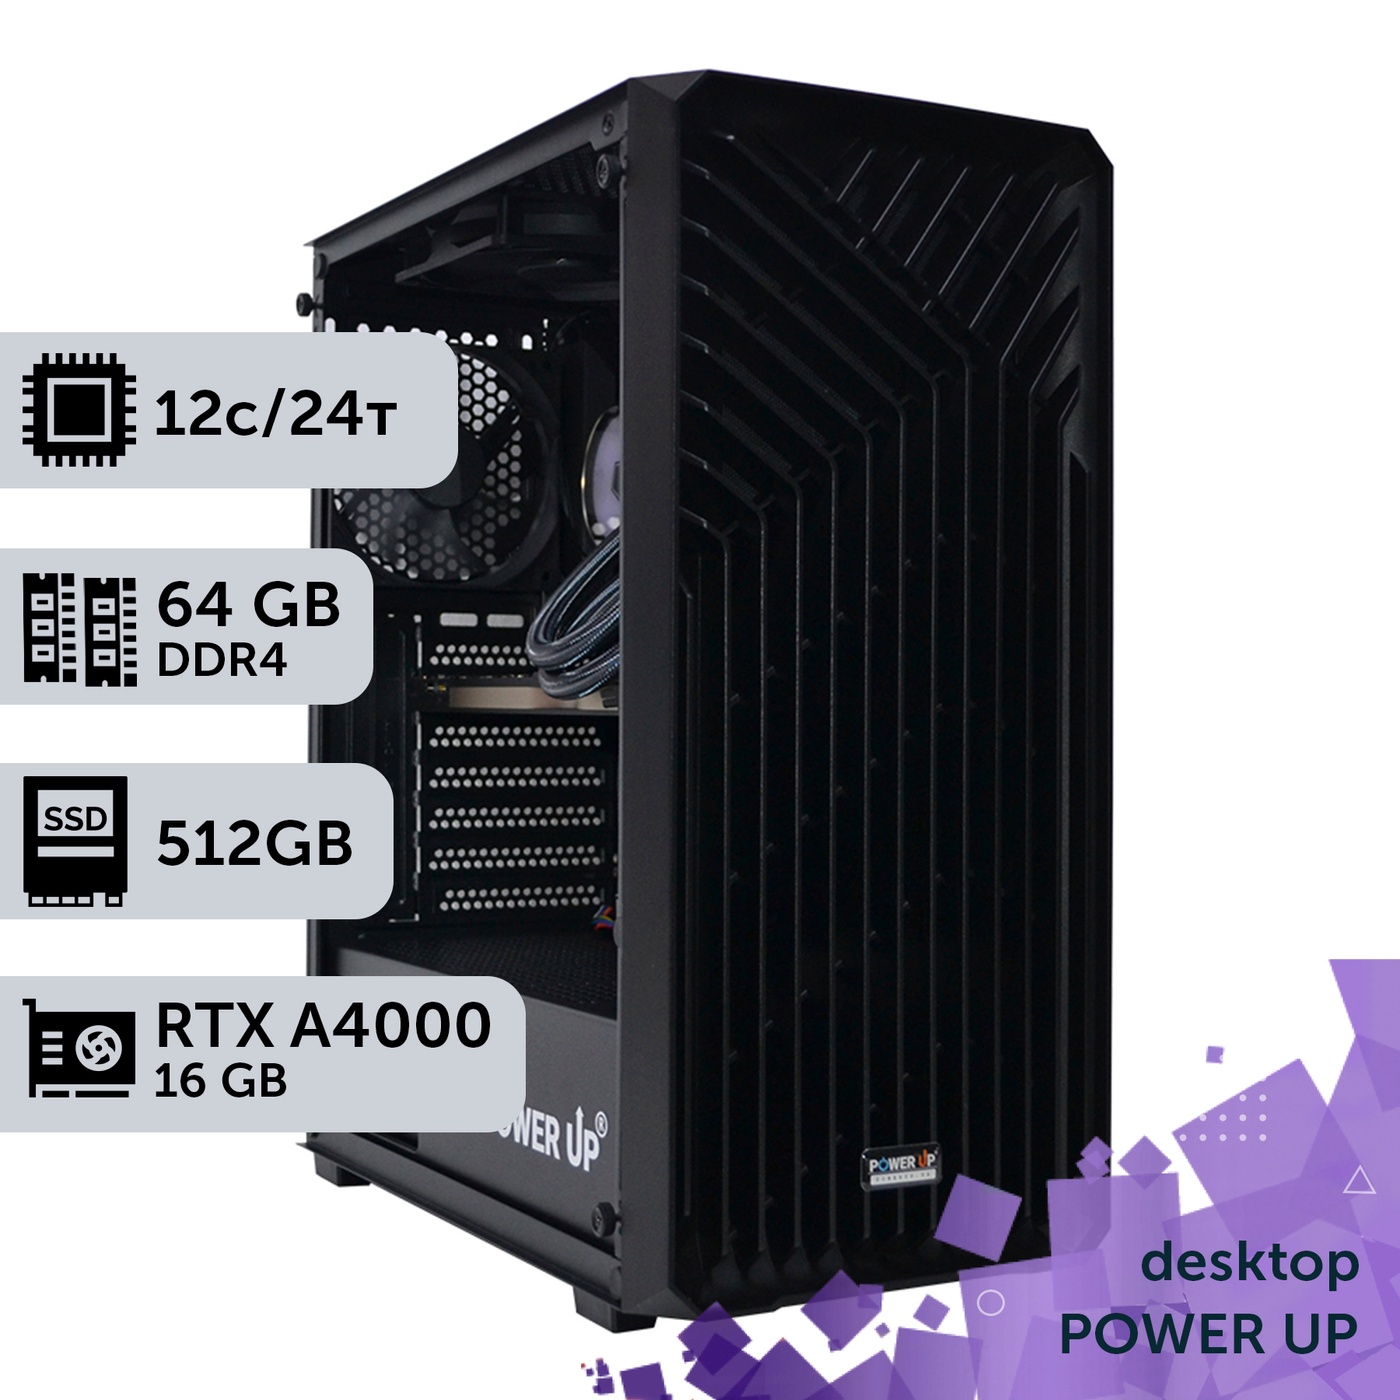 Робоча станція PowerUp Desktop #103 Ryzen 9 5900x/64GB/HDD 2TB/SSD 512GB/NVIDIA Quadro RTX A4000 16GB